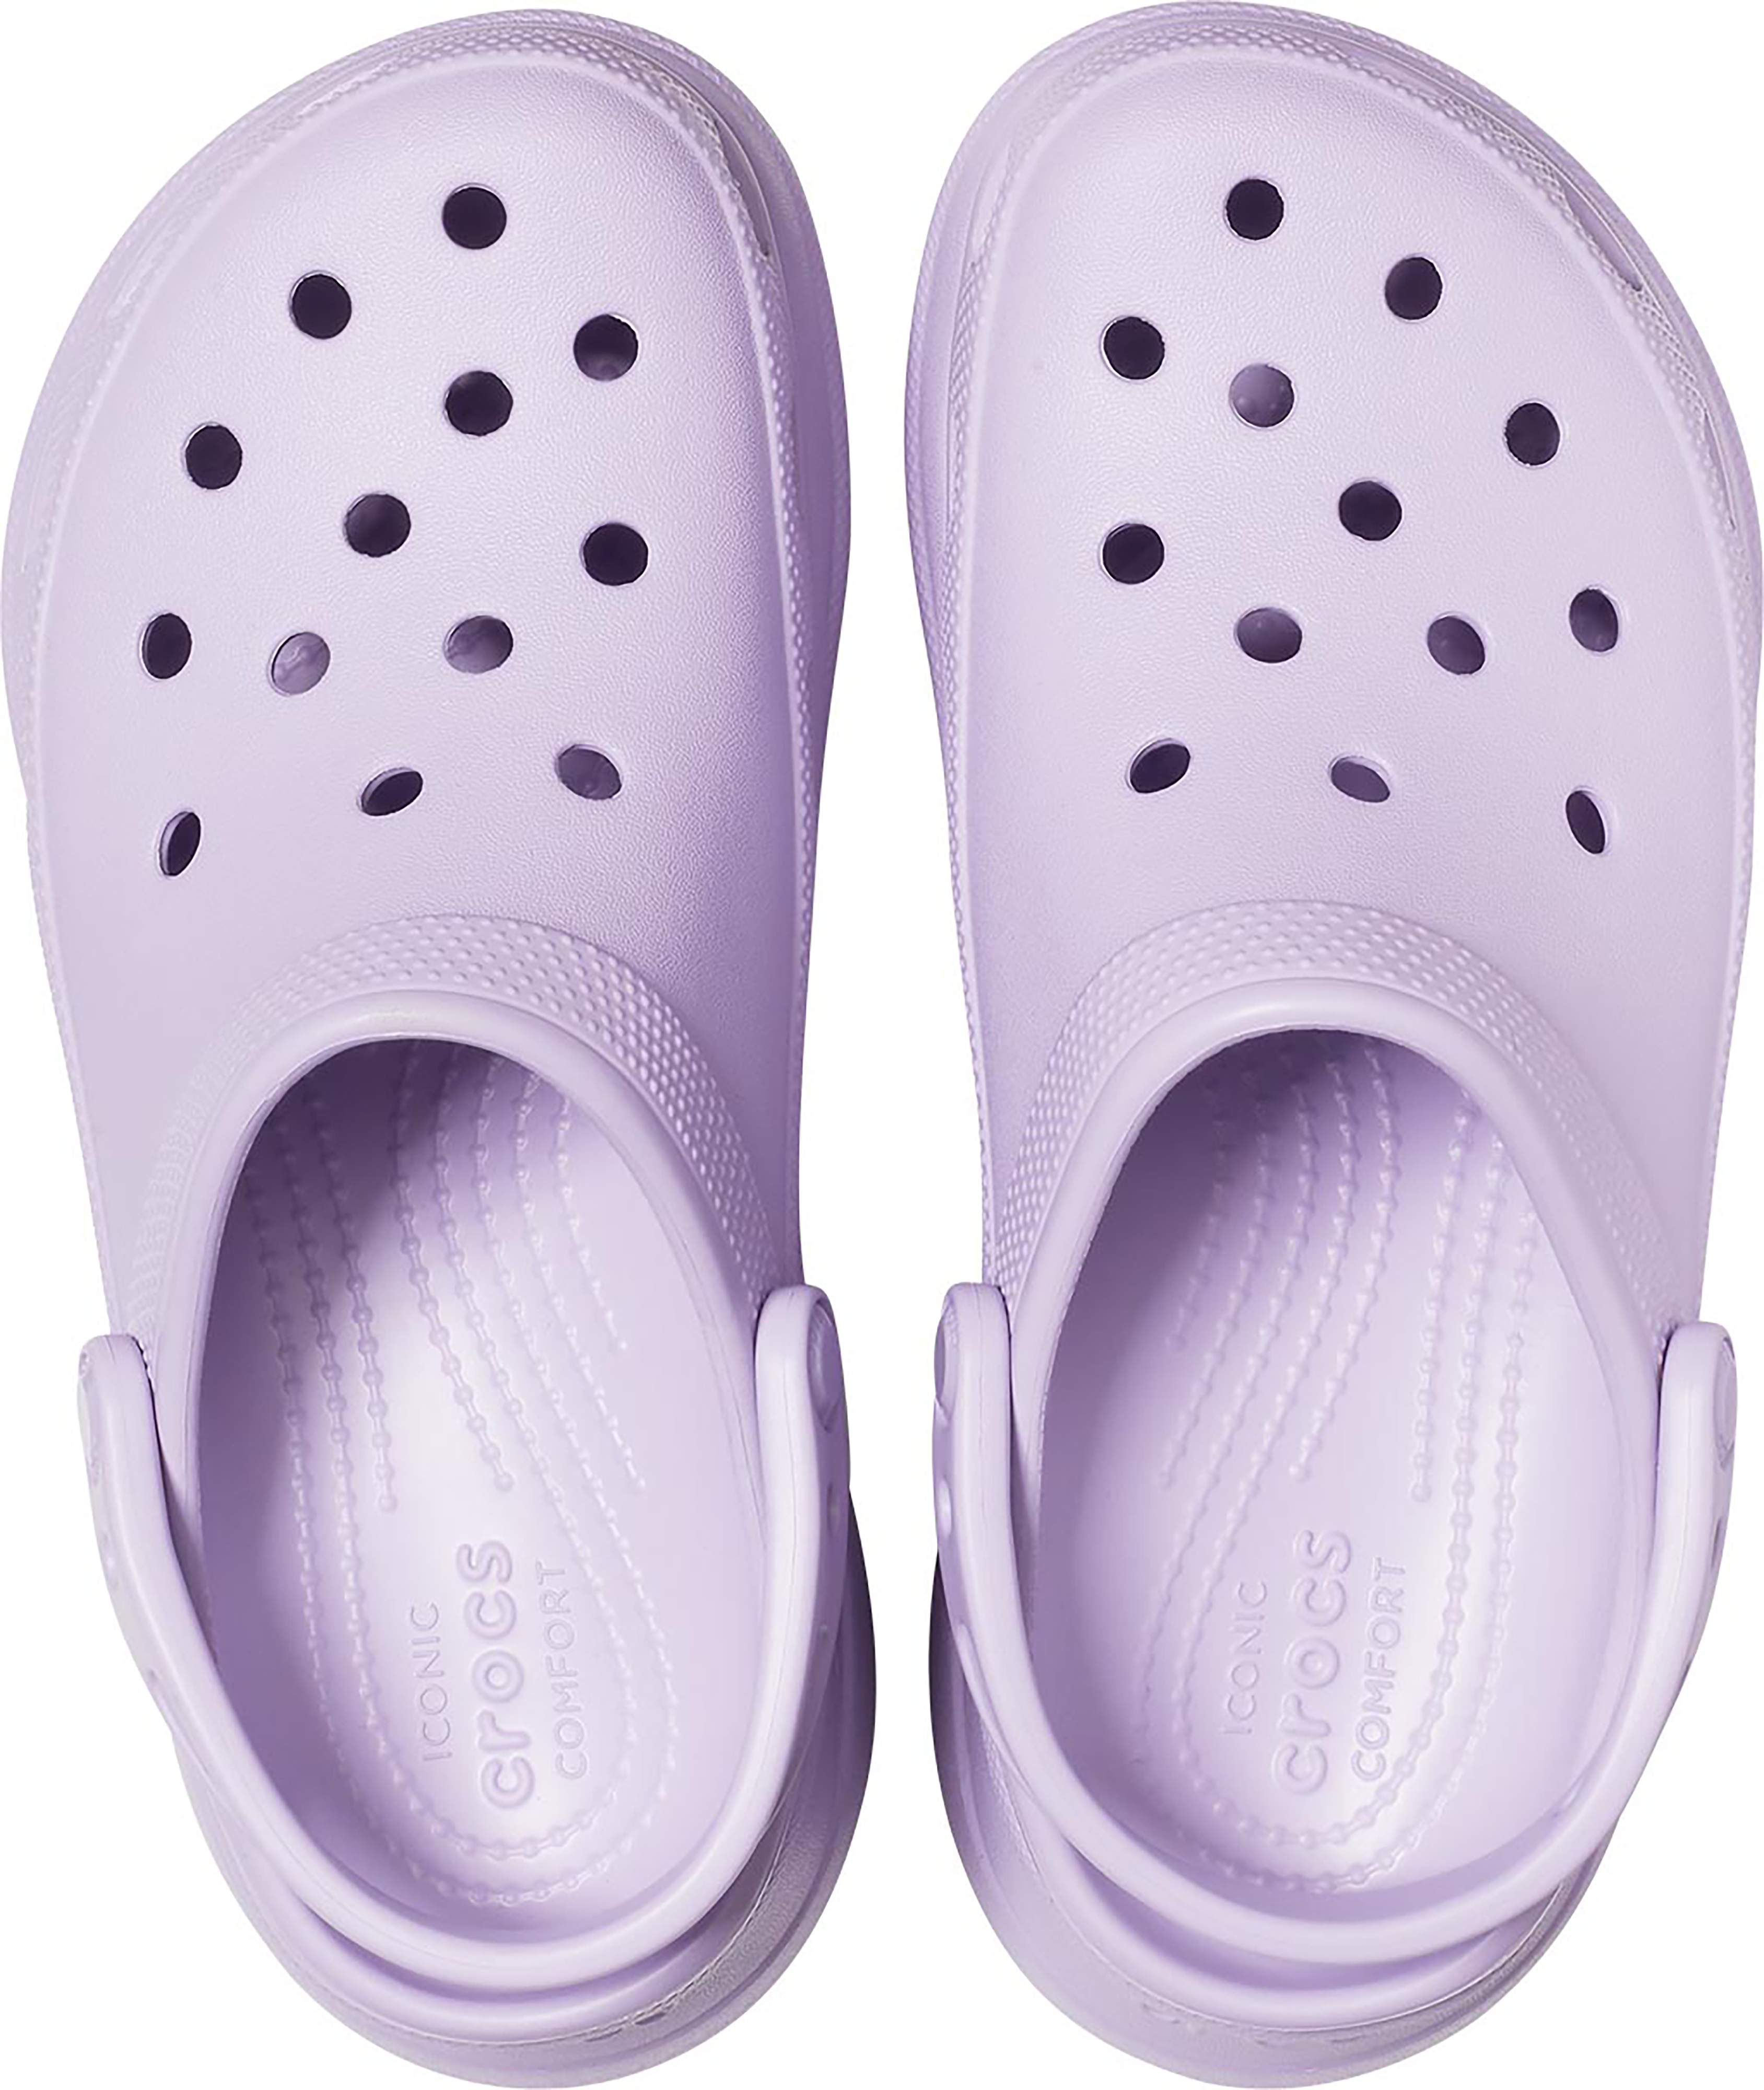 show me crocs shoes